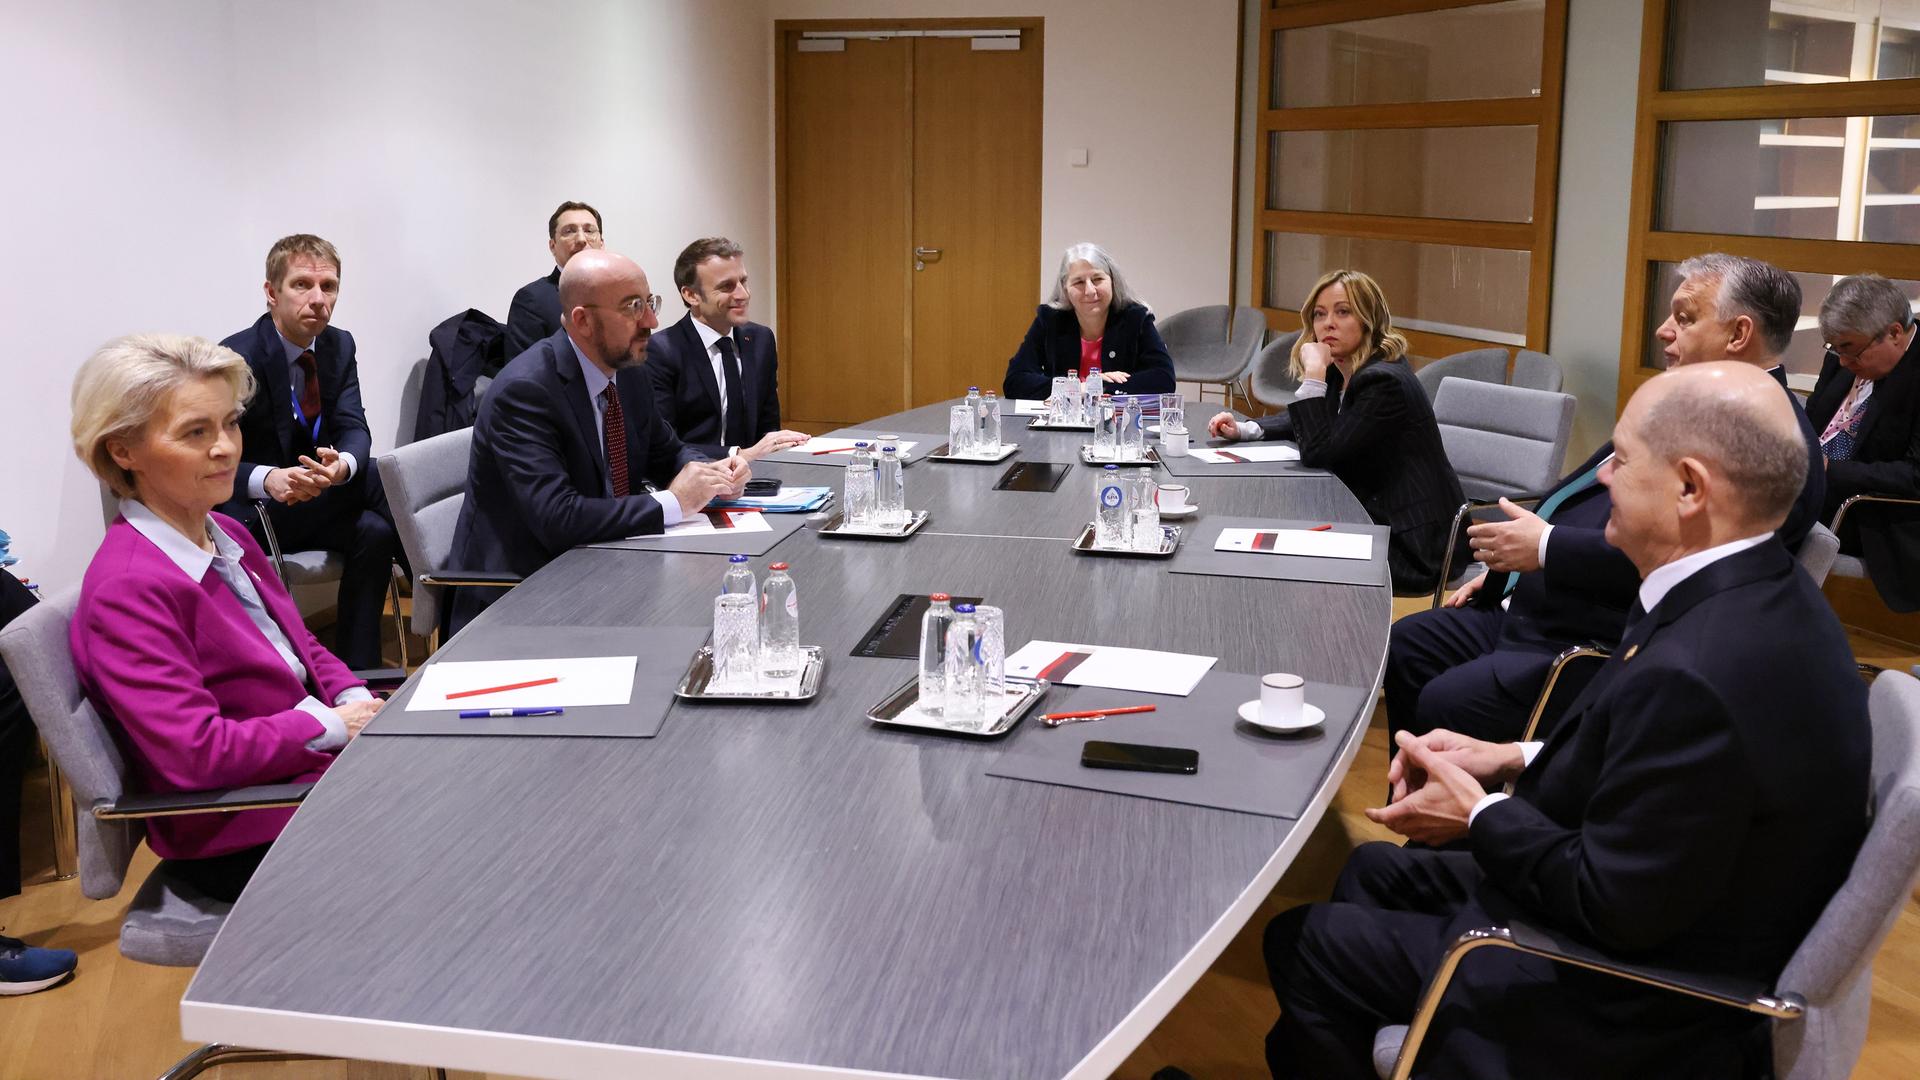 An einem runden Tisch sitzen Politikerinnen und Politiker, darunter auch Viktor Orban.